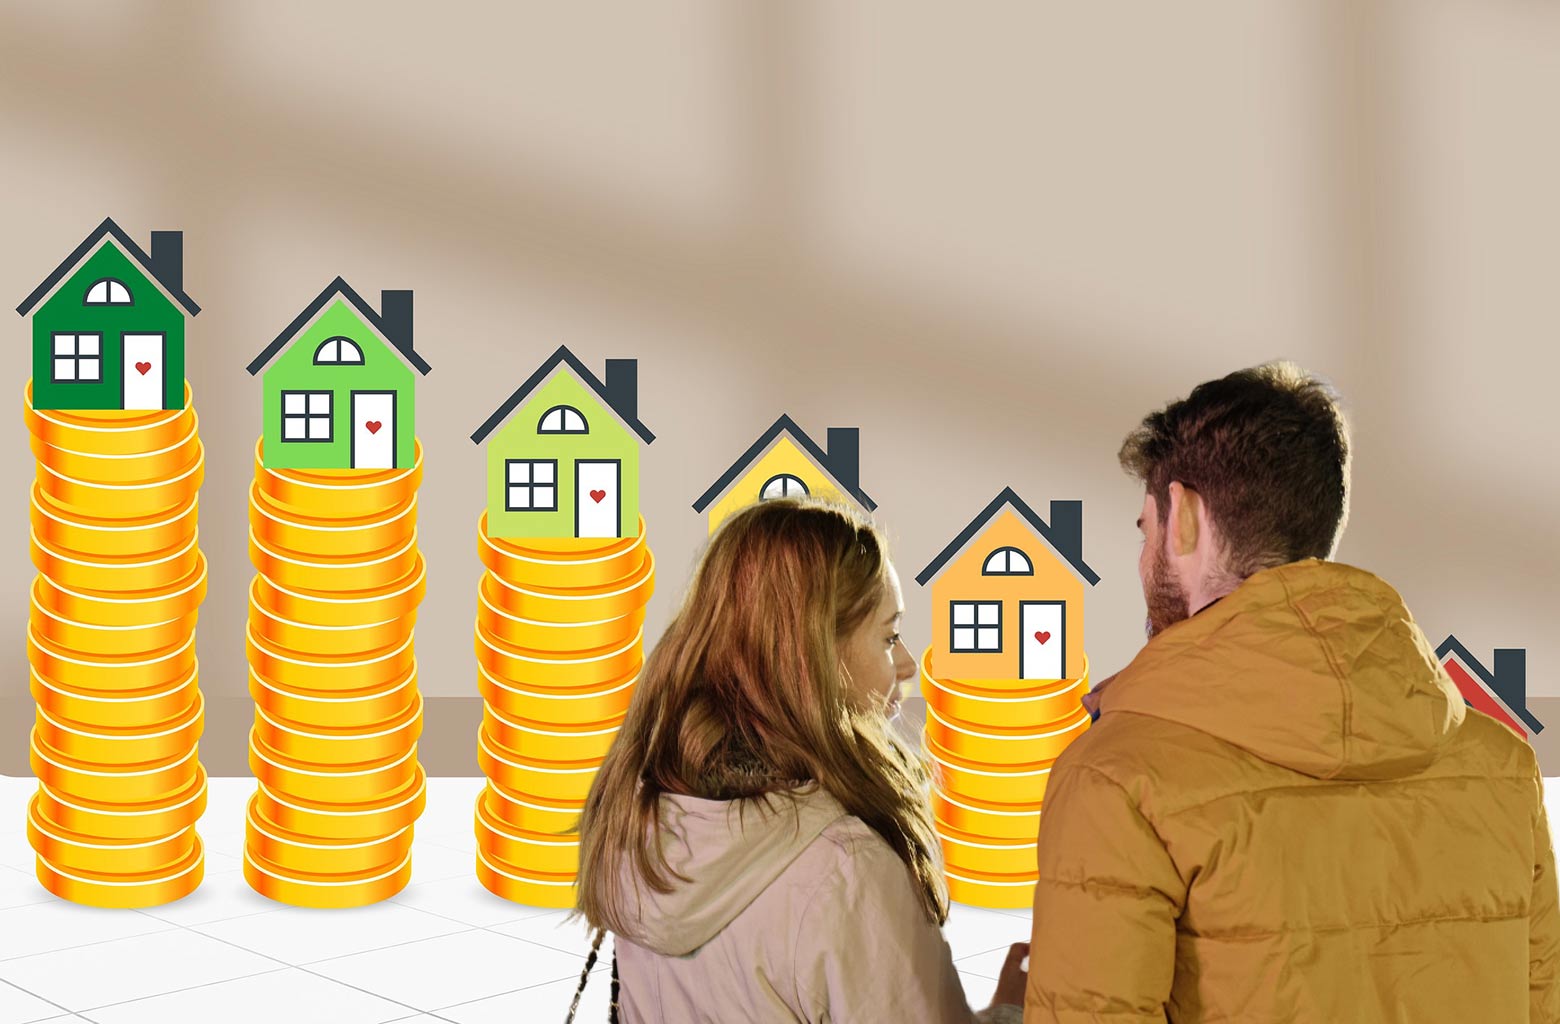 Εξοικονομώ 2023: Στις 12 Ιουνίου ανοίγει το νέο πρόγραμμα (πίνακες)- Δυο κατηγορίες επιδοτήσεων προβλέπει το νέο Εξοικονομώ – Τι ισχύει για ενοικιαζόμενες κατοικίες